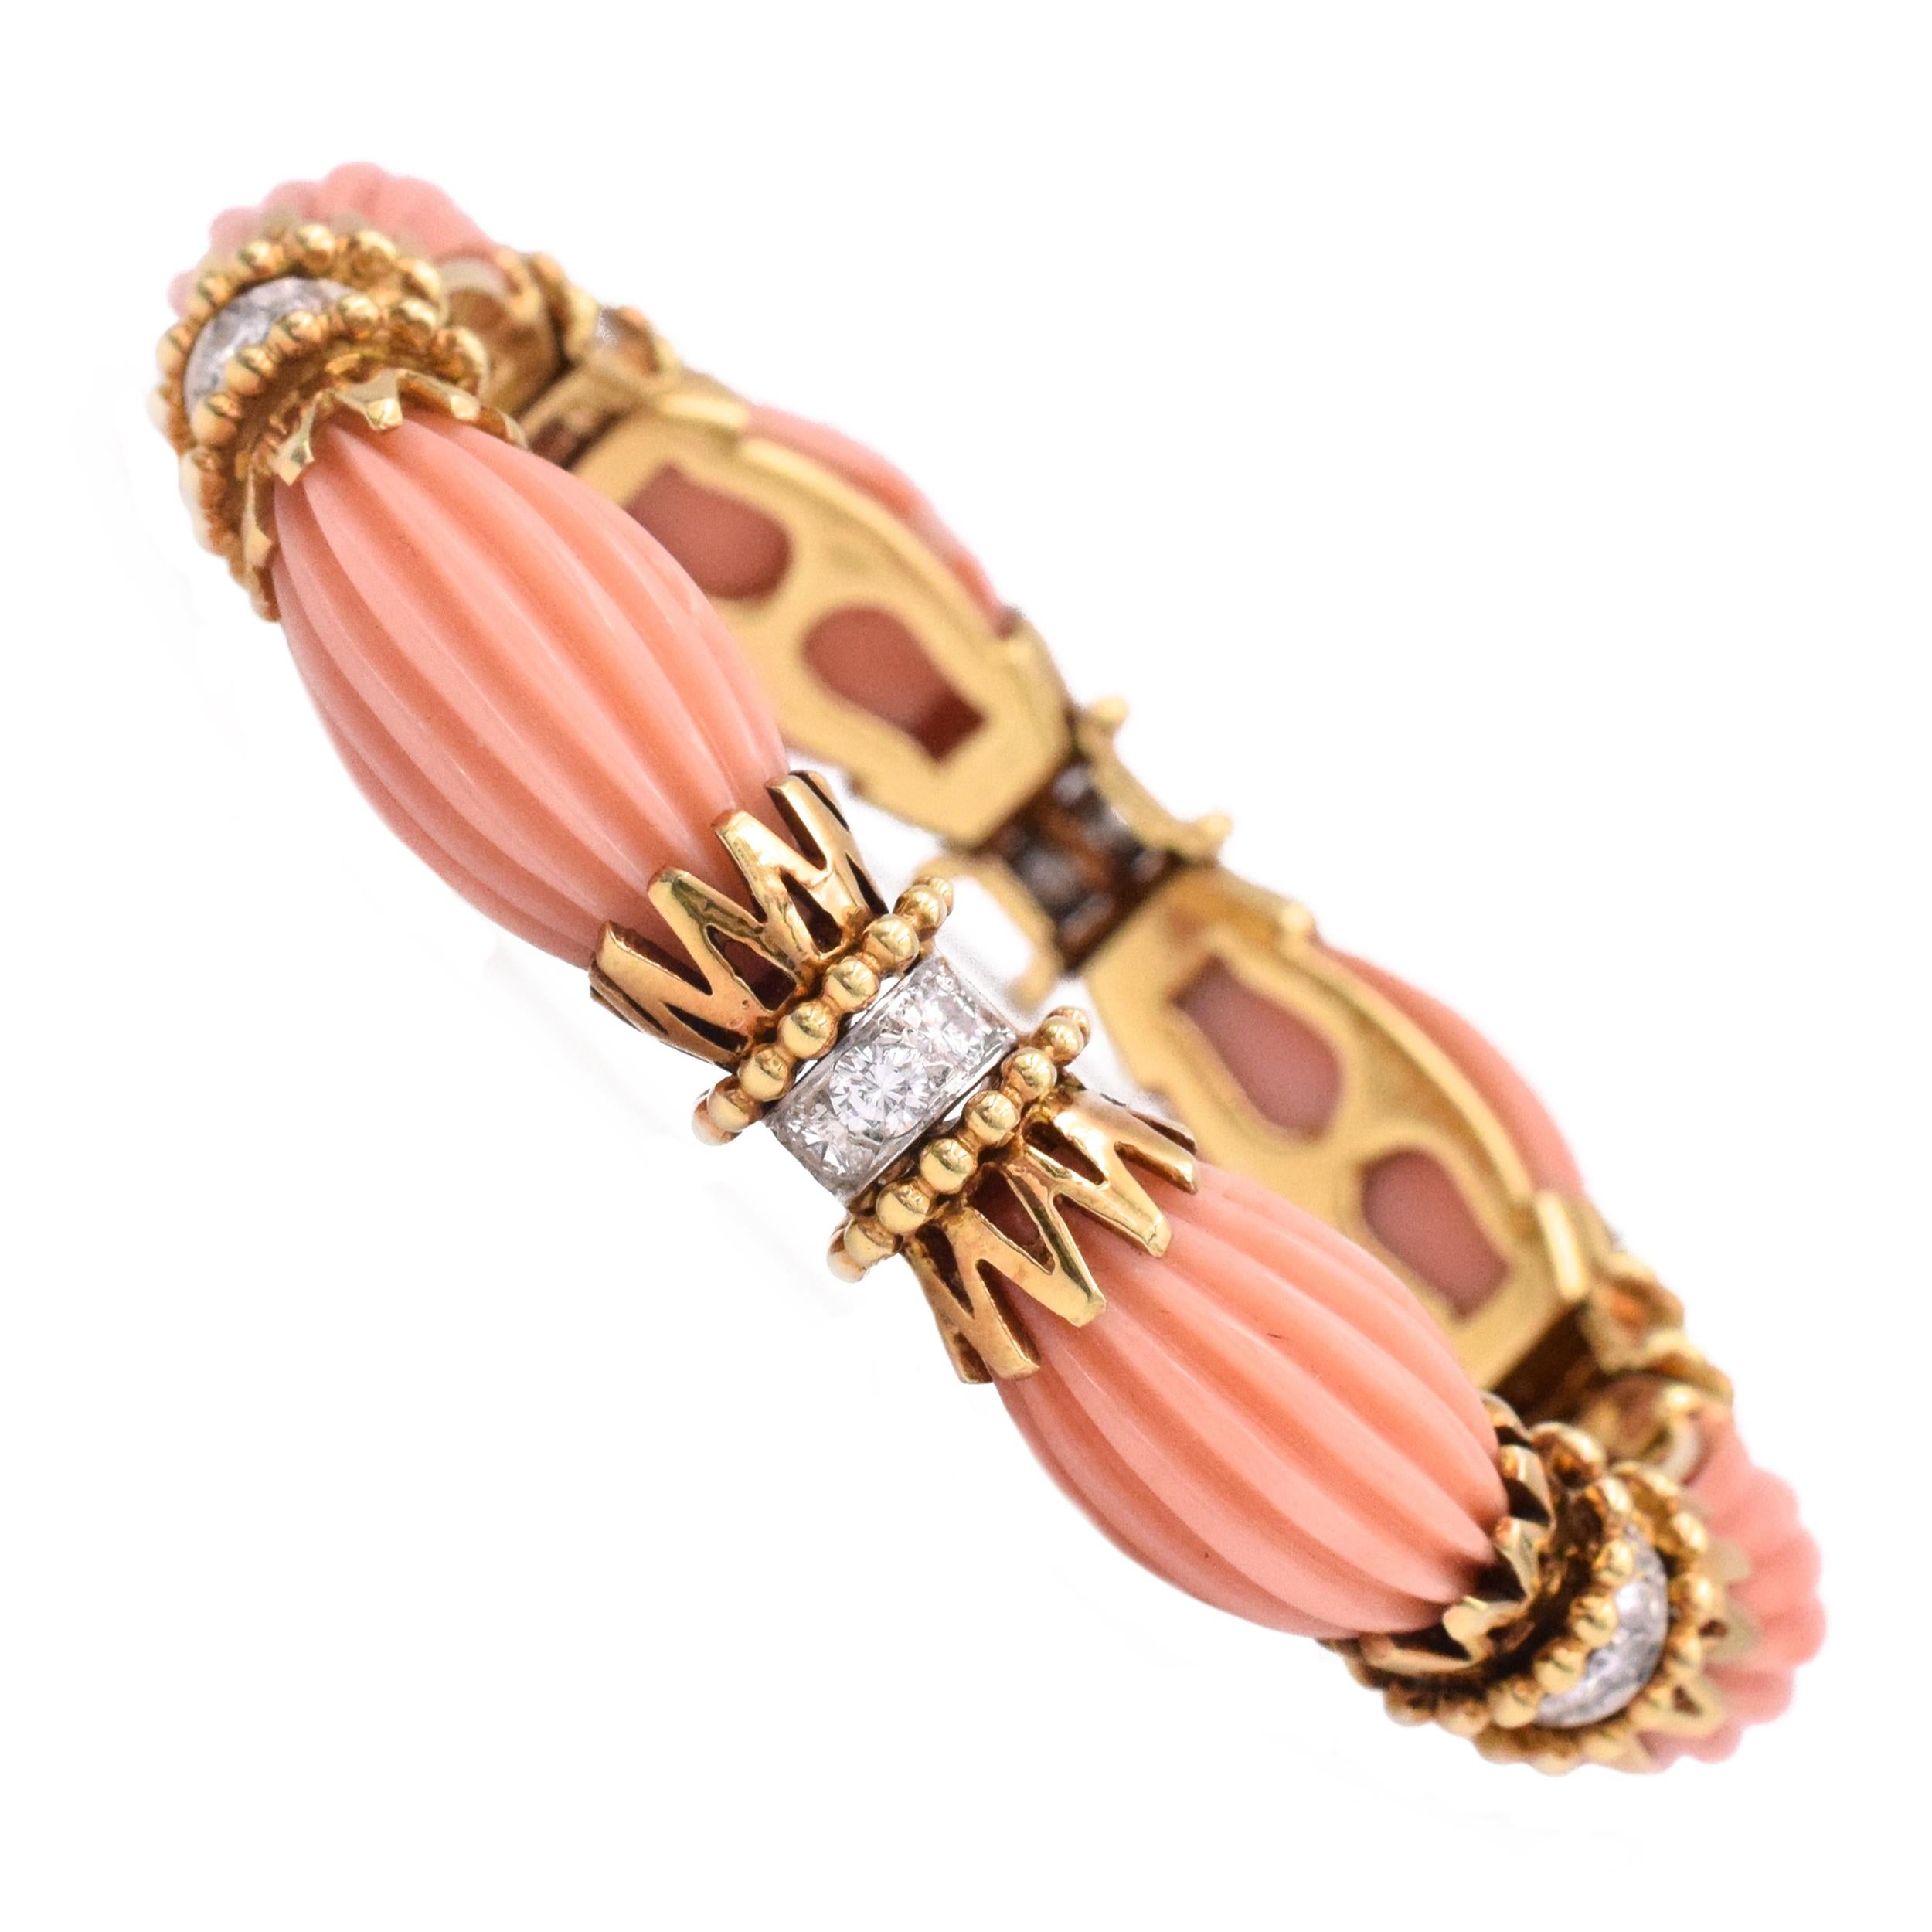 Van Cleef & Arpels - Bracelet ange en corail et diamants
 Composé de maillons cannelés en corail sculpté, espacés par des motifs en or, mis en valeur par des diamants ronds. Diamants, dont le poids total est estimé à environ 1,60 carats.
 La